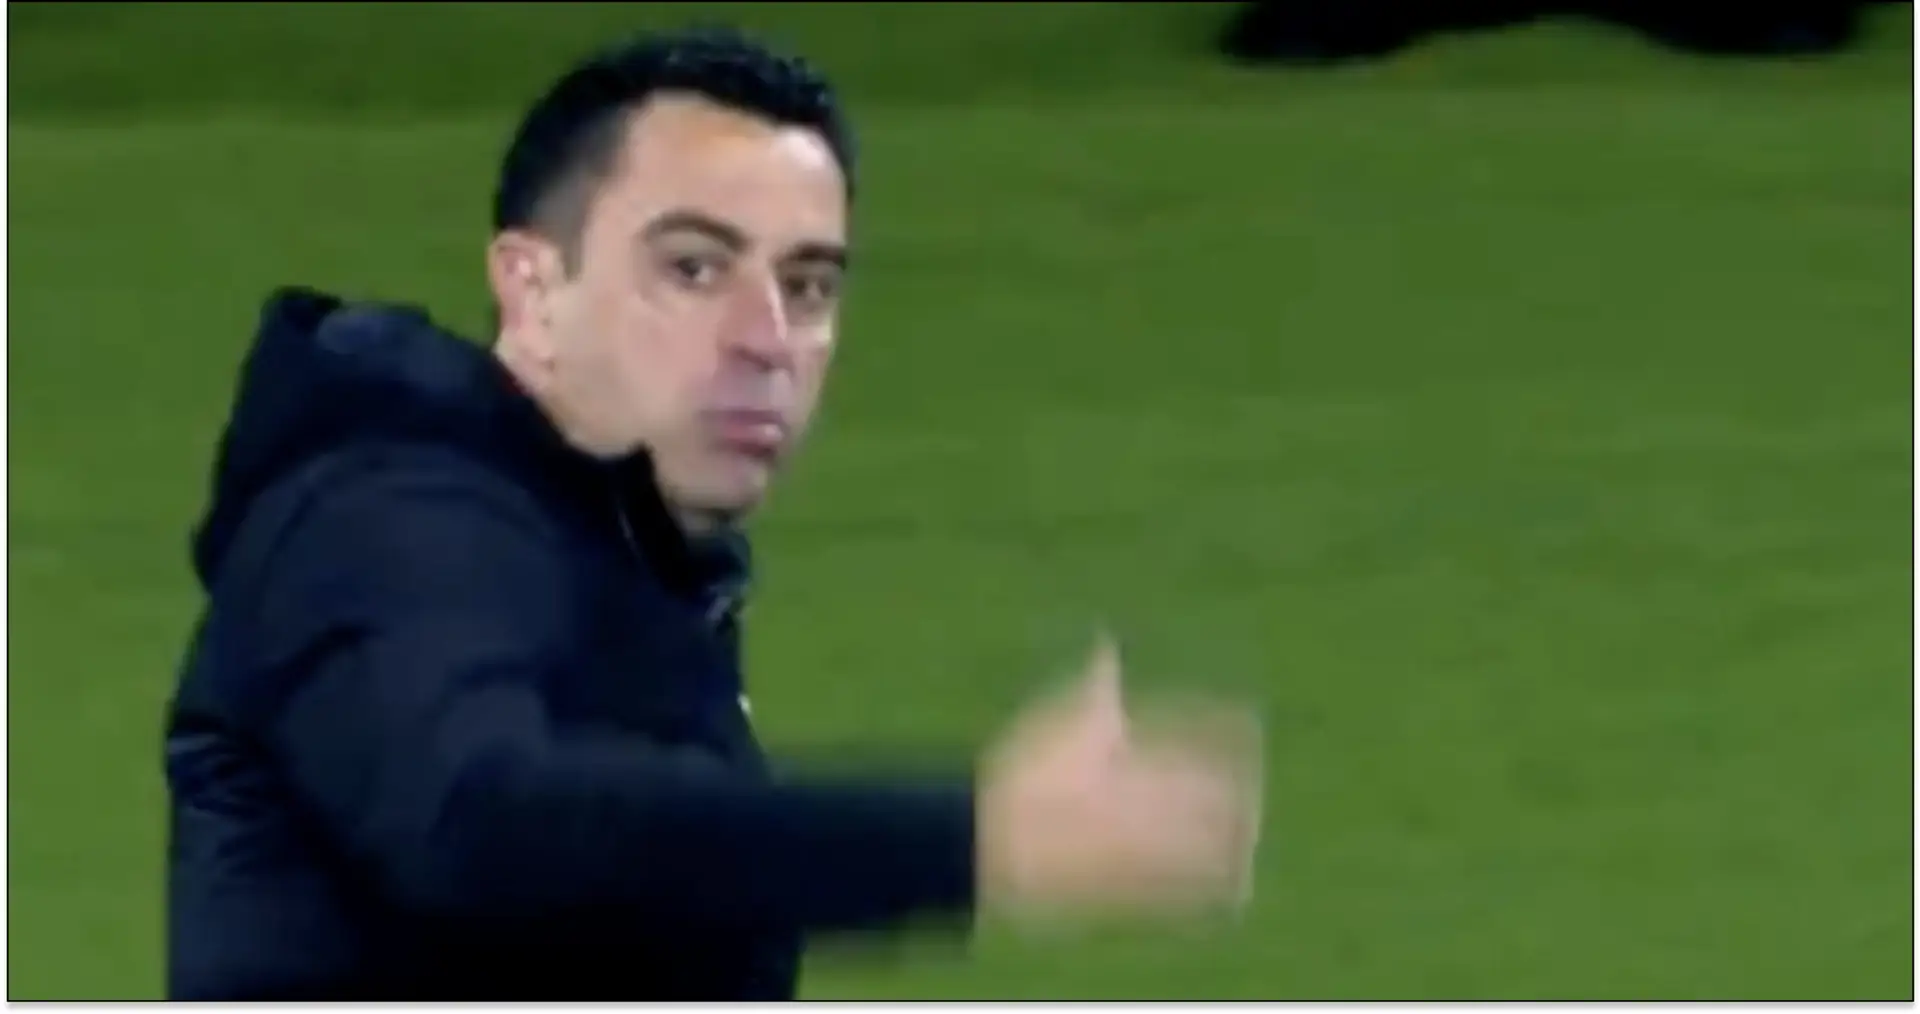 'Vamos, expúlsame': lo que le dijo Xavi al árbitro ante el PSG antes de recibir la roja